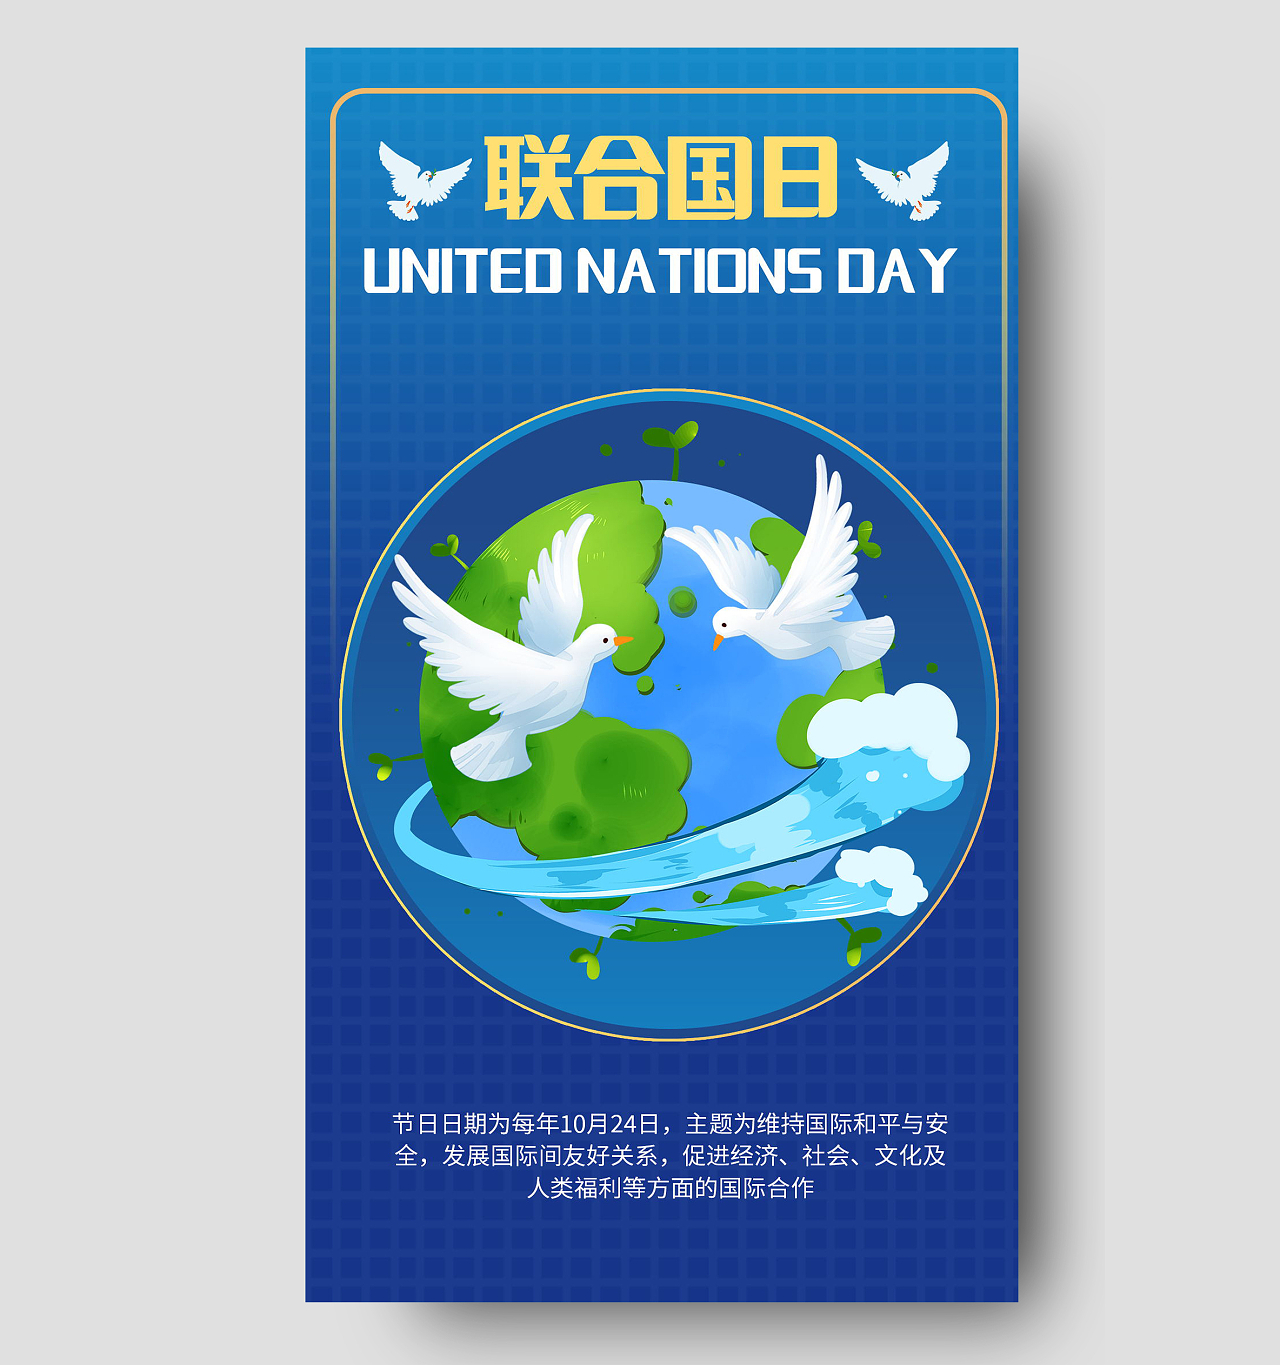 世界联合国日维护国际和平与安全手机海报模板设计